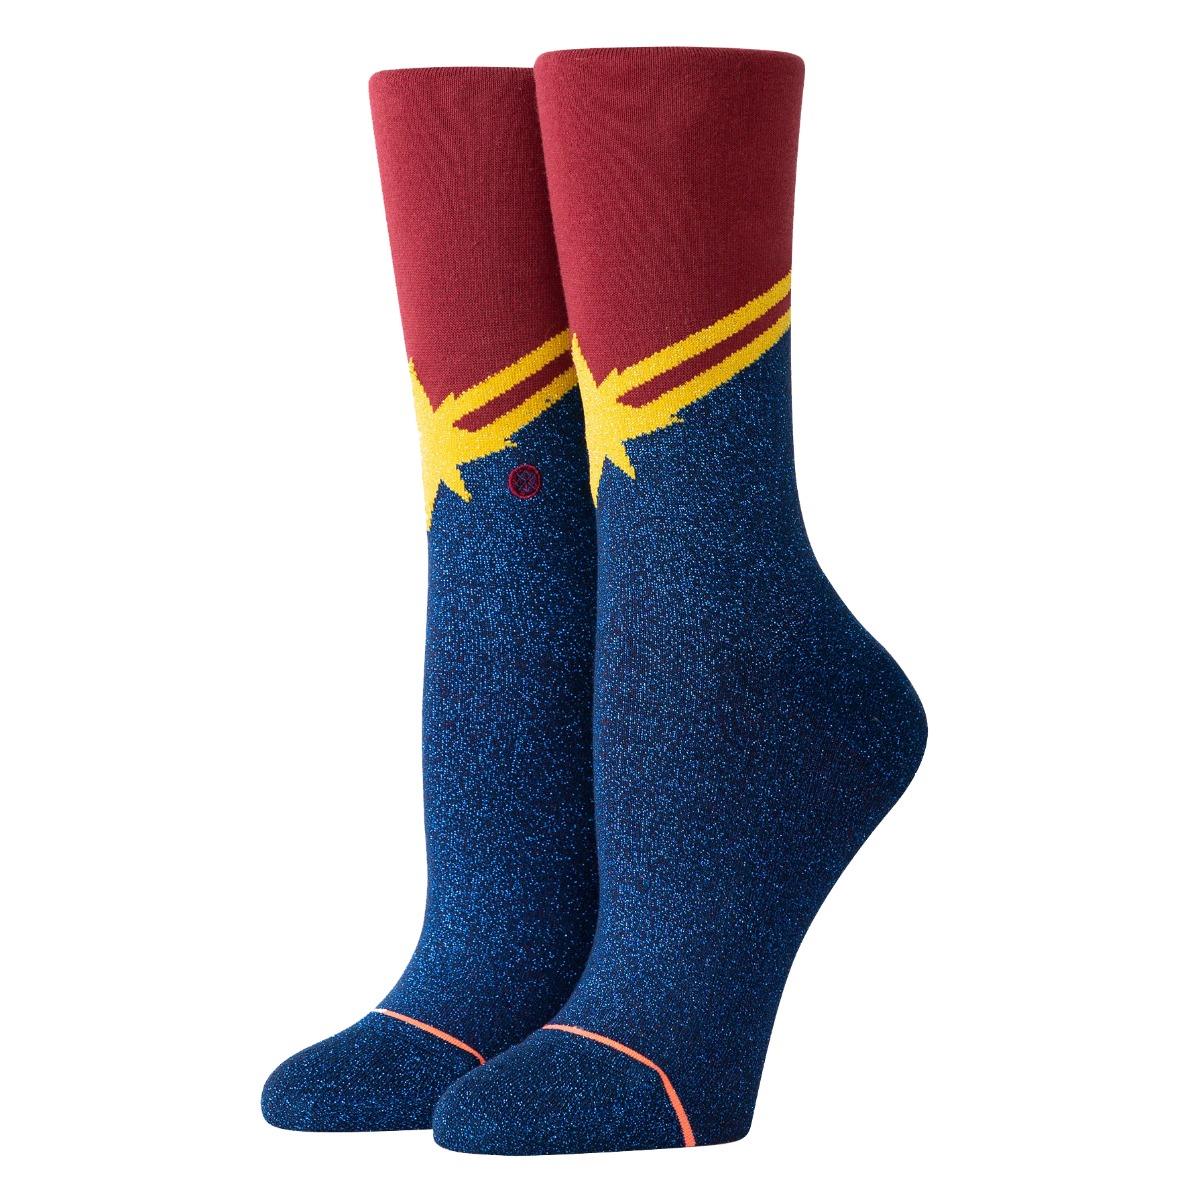 Stance NEW Women's Captain Marvel Socks Red BNWT eBay